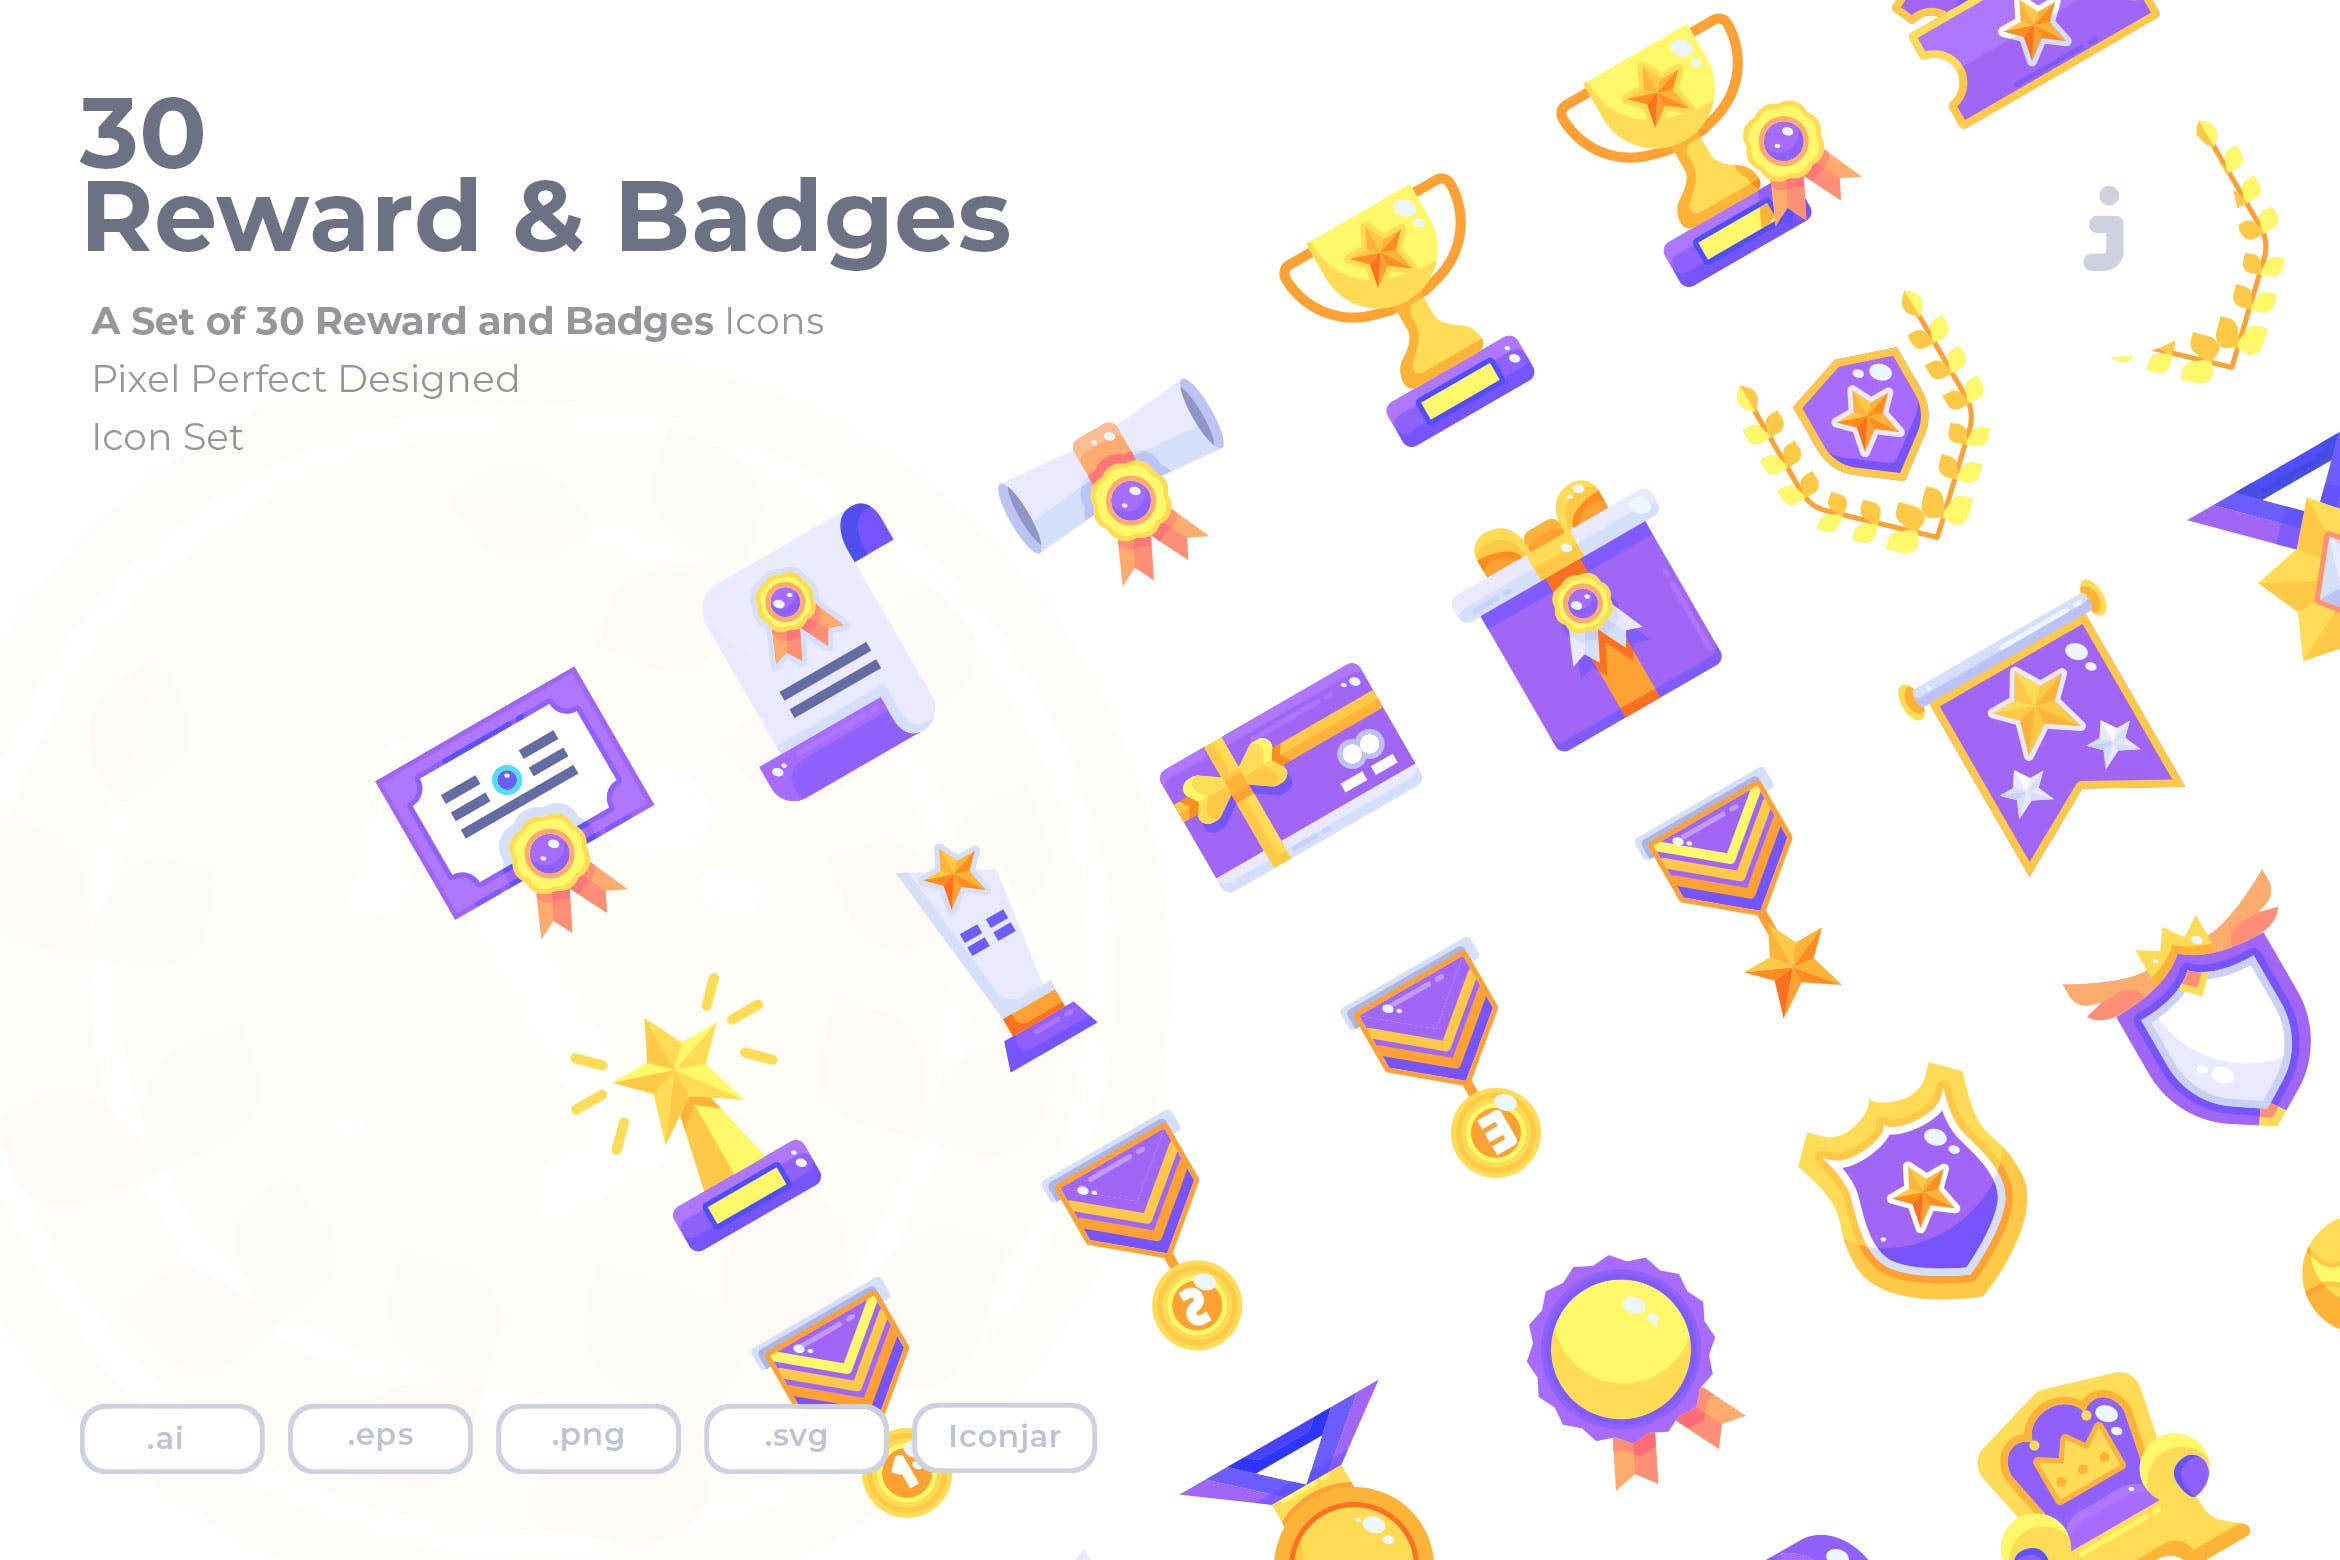  30个奖励和徽章图标30 Reward & Badges Icons Flat